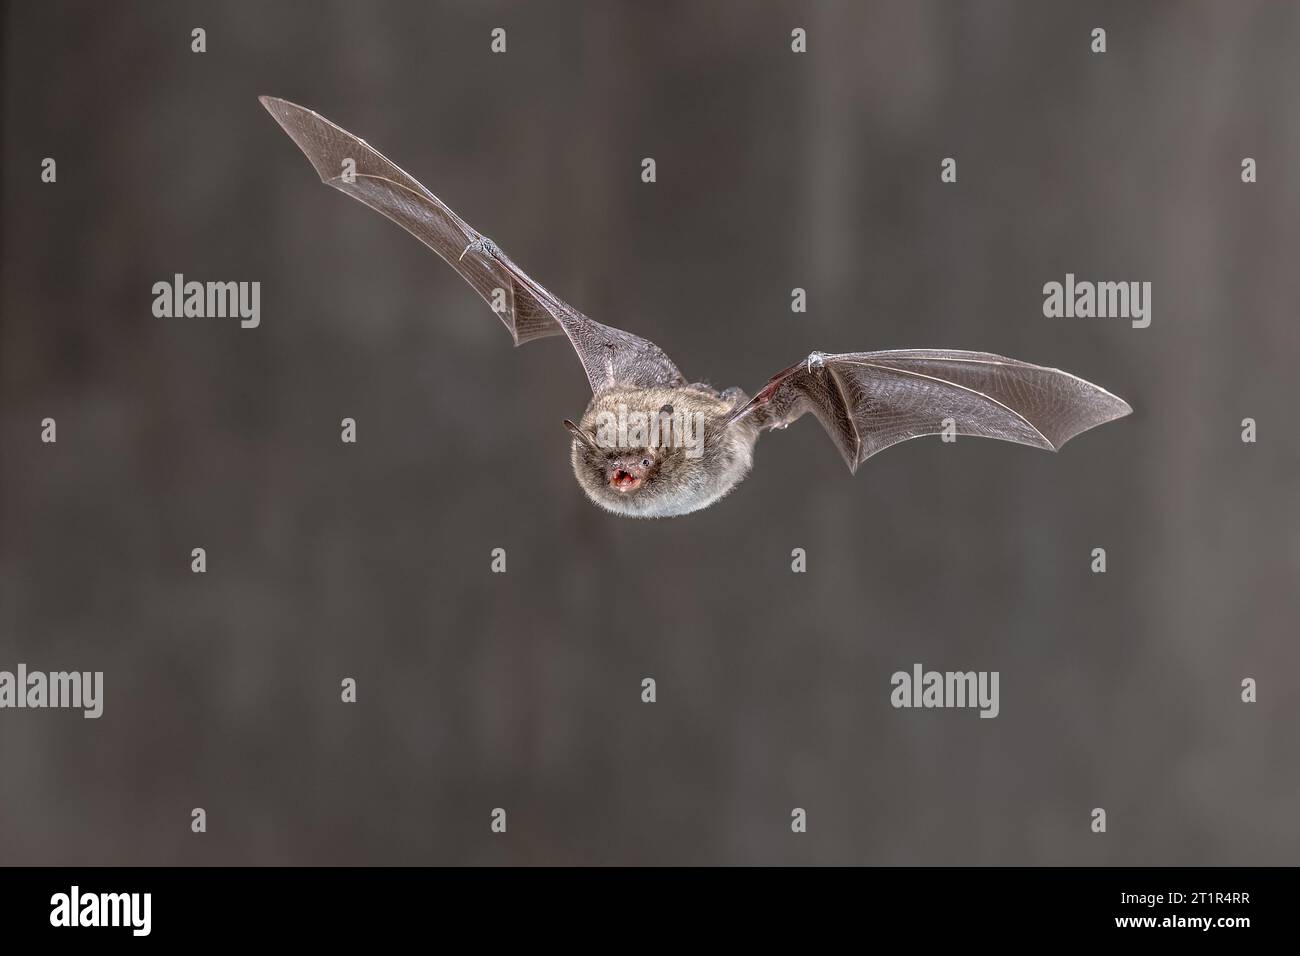 Daubentons-Fledermaus (Myotis daubentonii), die in der Dunkelheit der Nacht fliegen. Daubentons Fledermaus ist eine mittelgroße bis kleine Art. Das flauschige Fell der Fledermaus ist braun Stockfoto